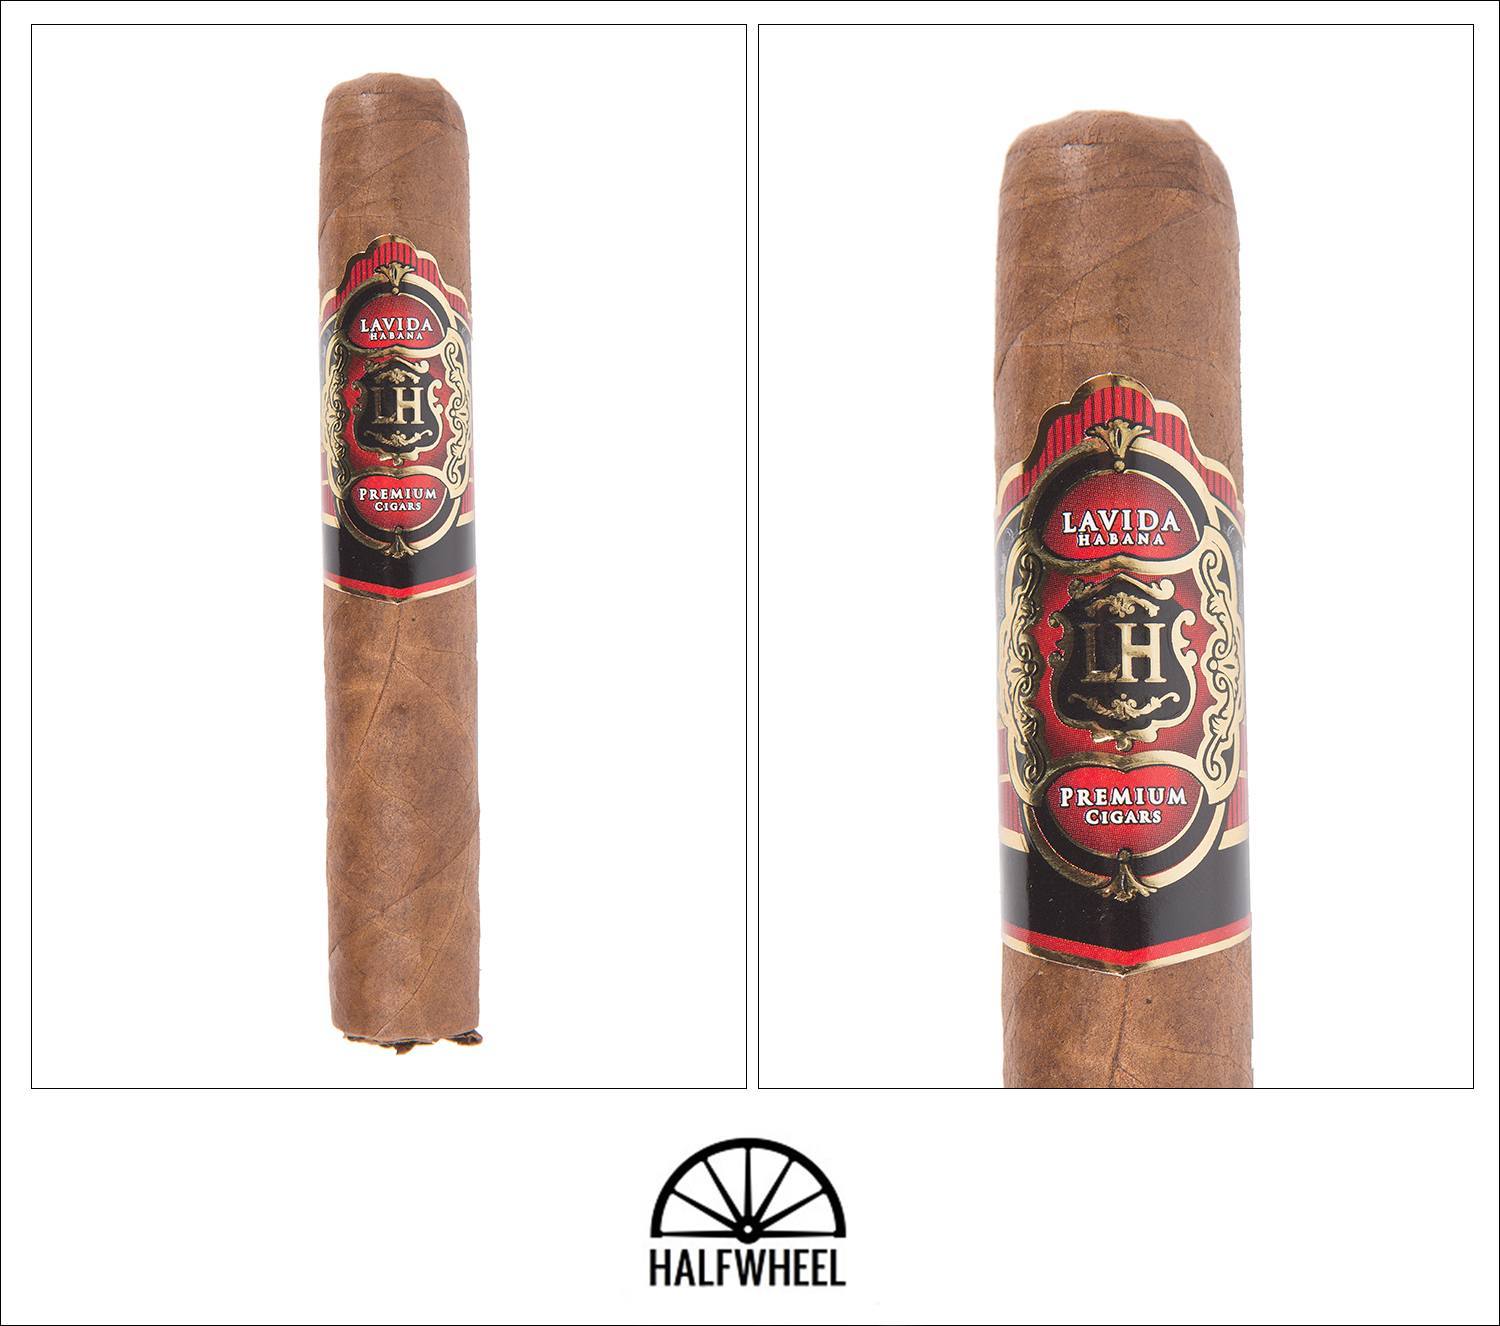 LH Cigars Colorado Robusto 1